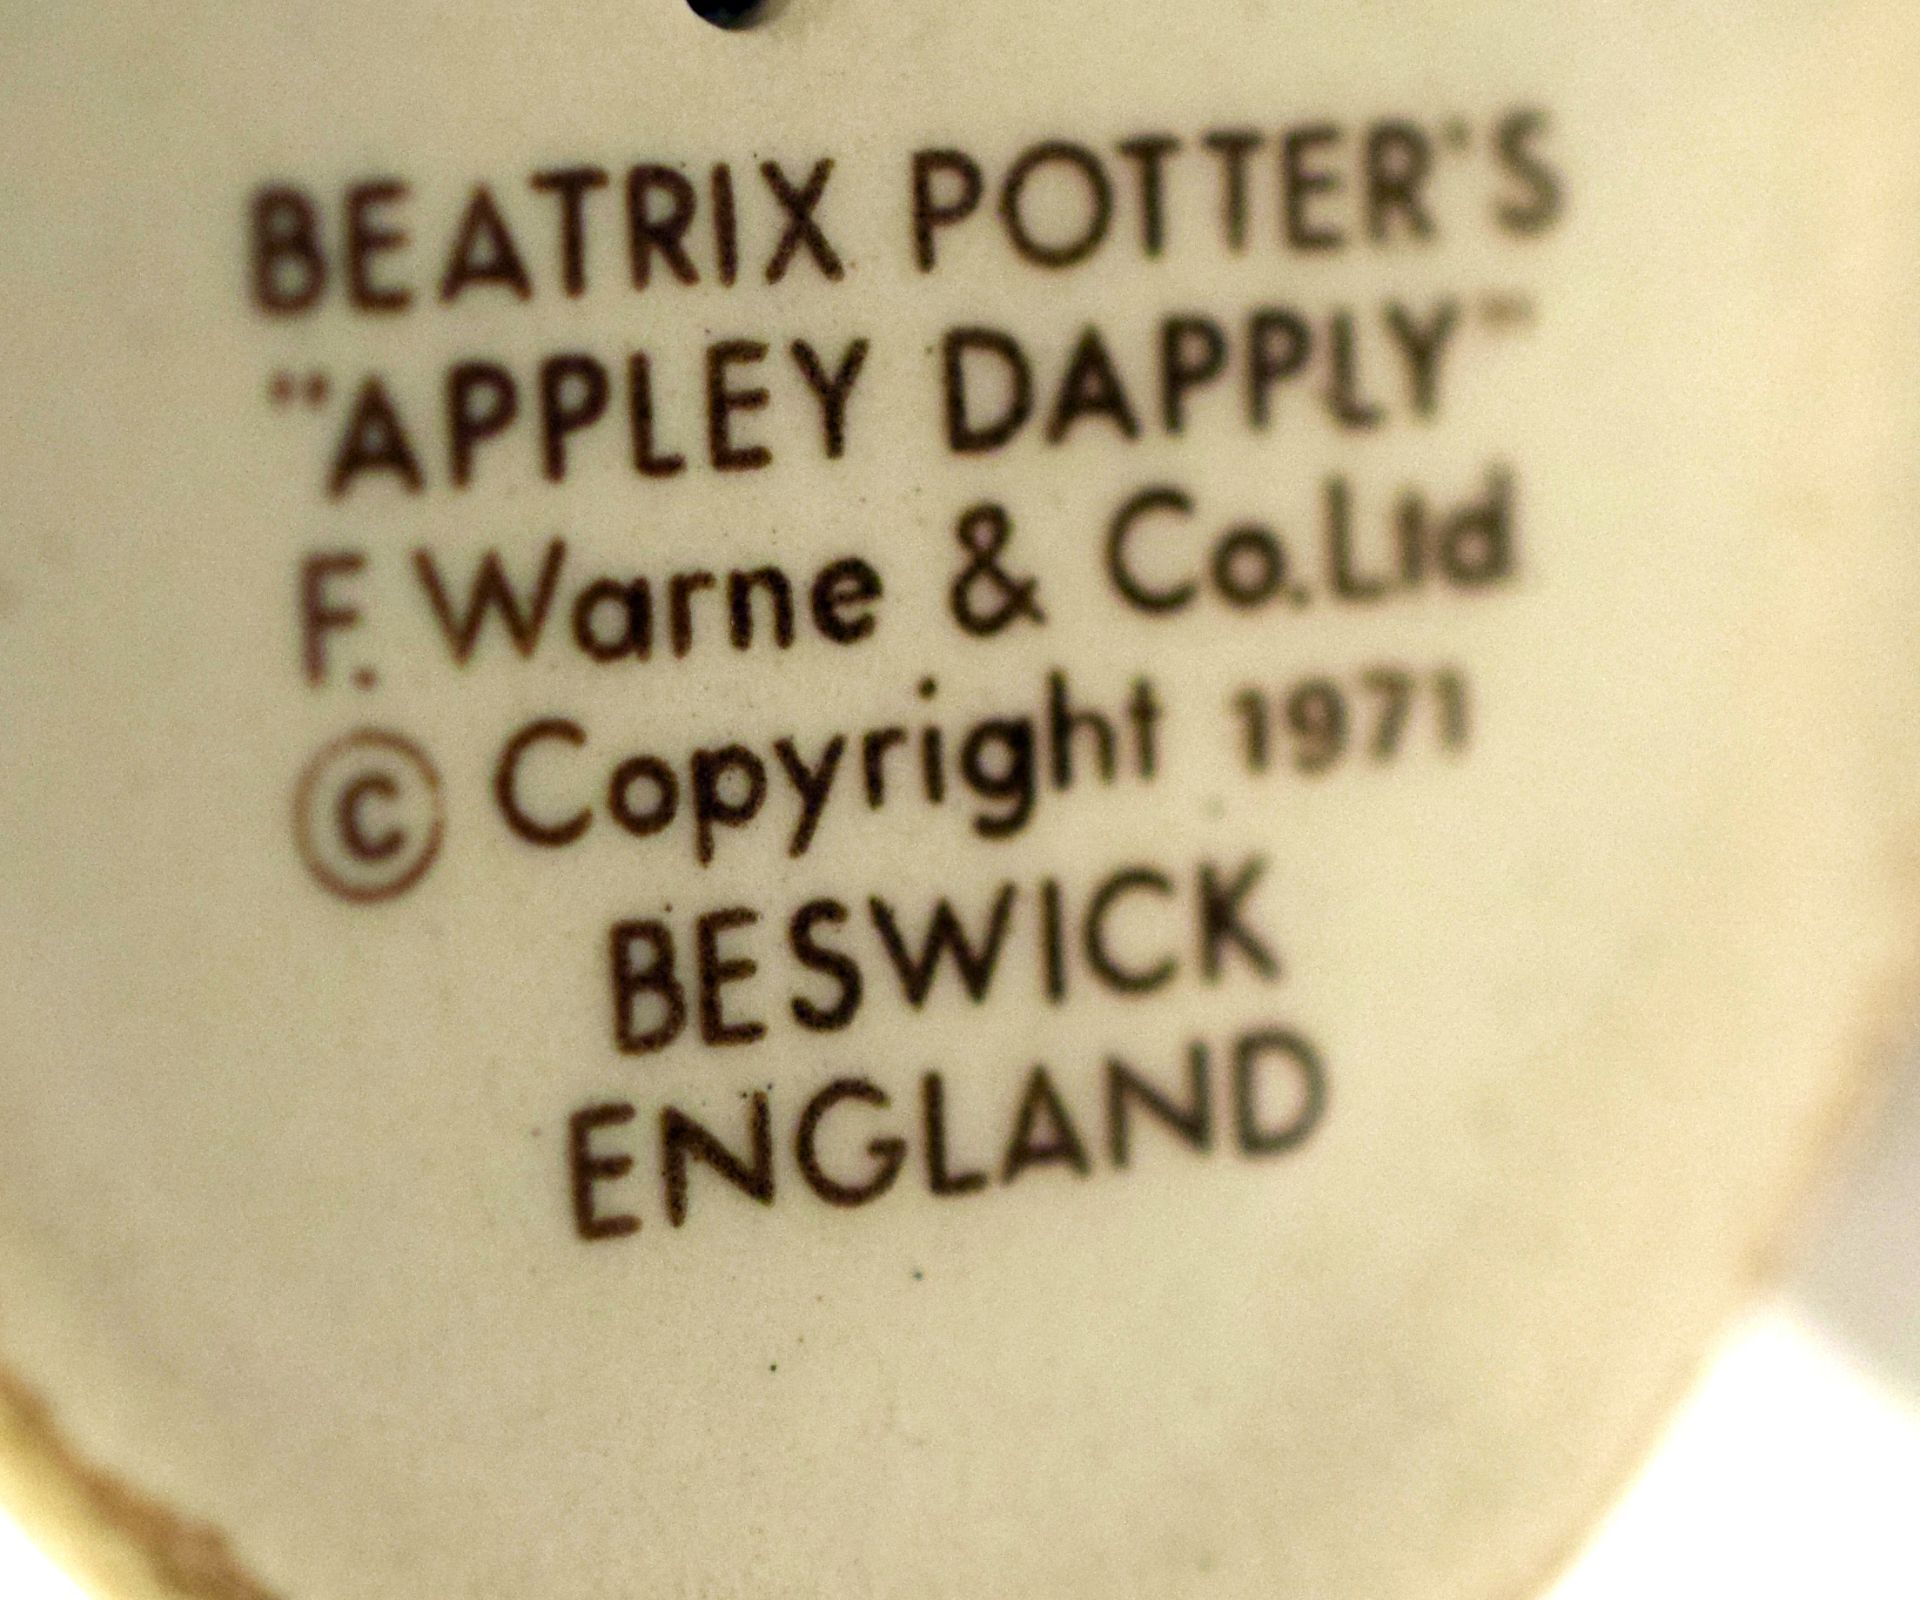 Beswick Beatrix Potter Appley Dapply 1971 - Image 3 of 3